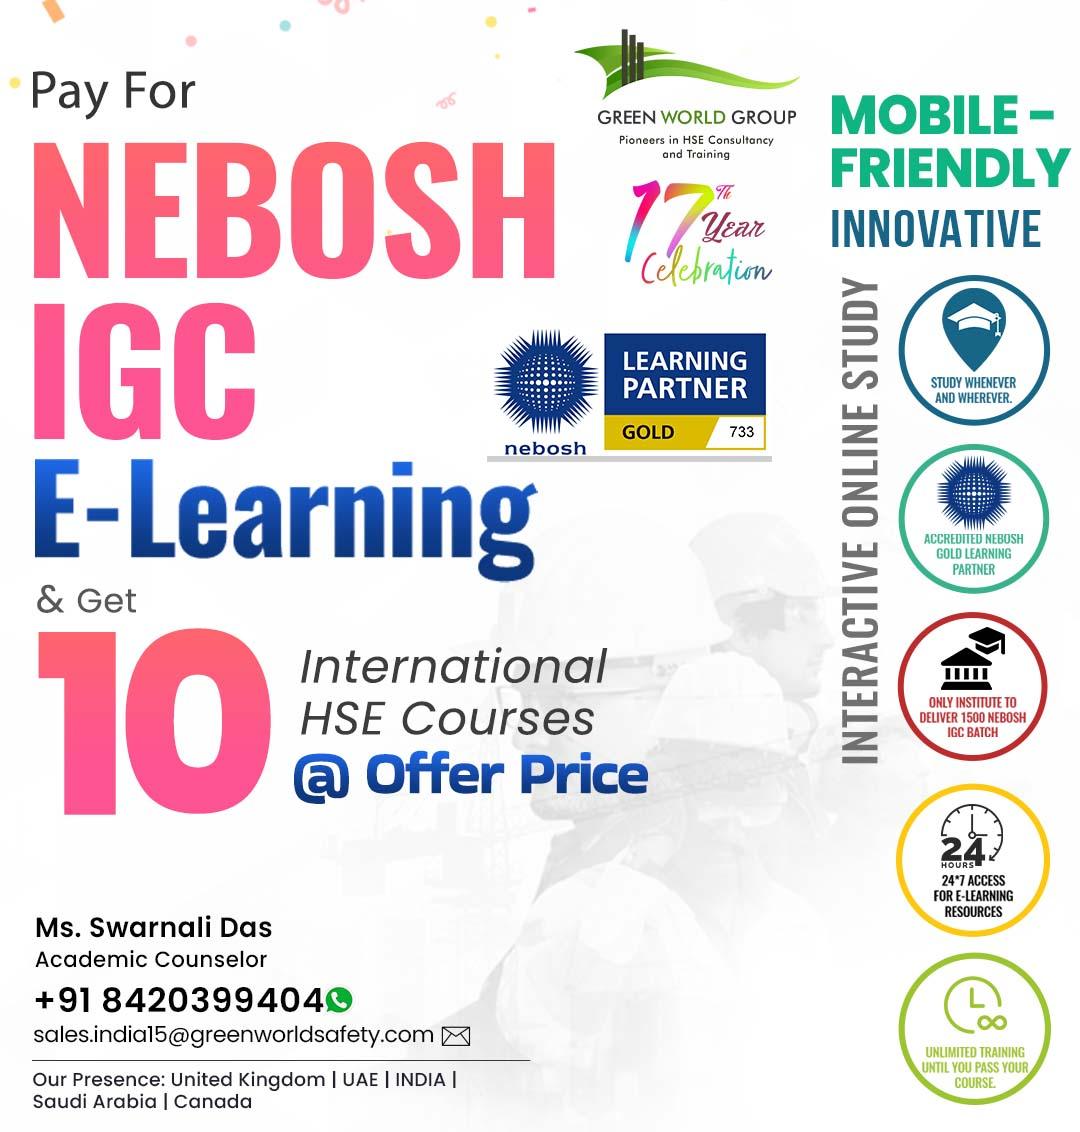 "Level Up Your Safety Skills With NEBOSH IGC E-Learning!"